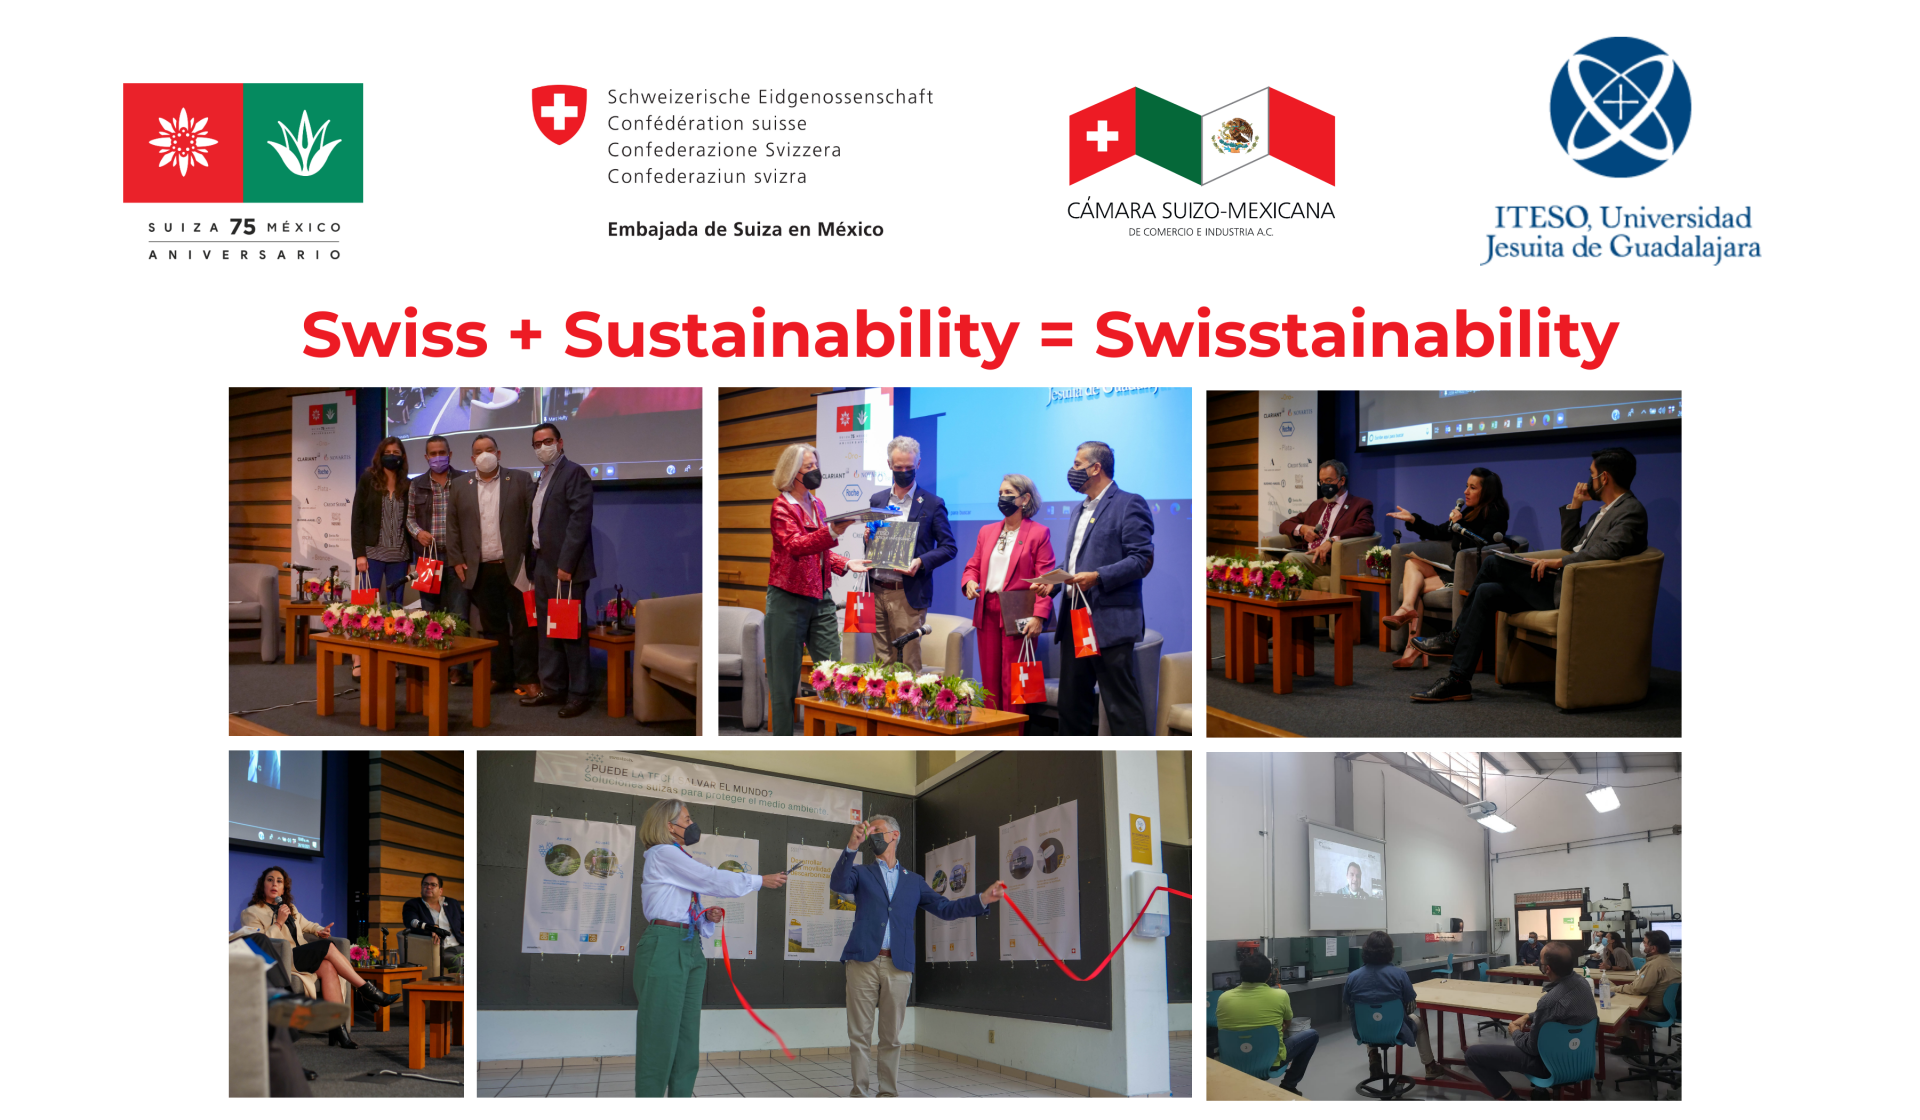 «Swiss + Sustainability = Swisstainability» Forum